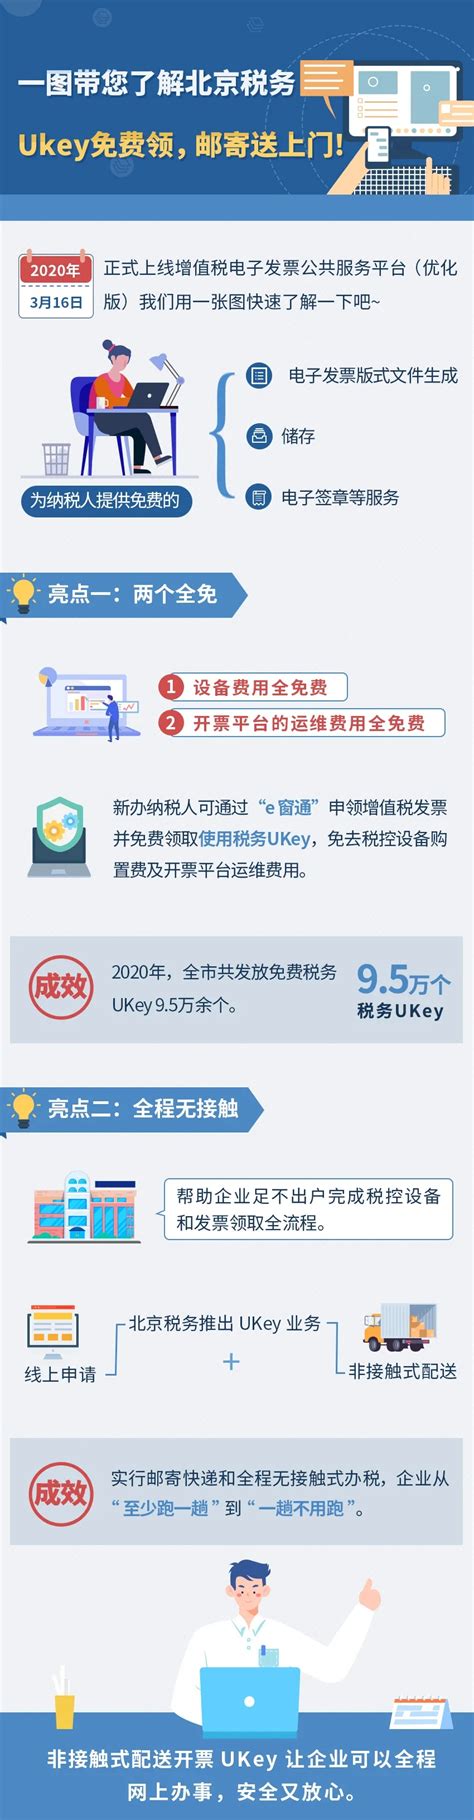 一图带您了解北京税务Ukey免费领 邮寄送上门_图解_首都之窗_北京市人民政府门户网站